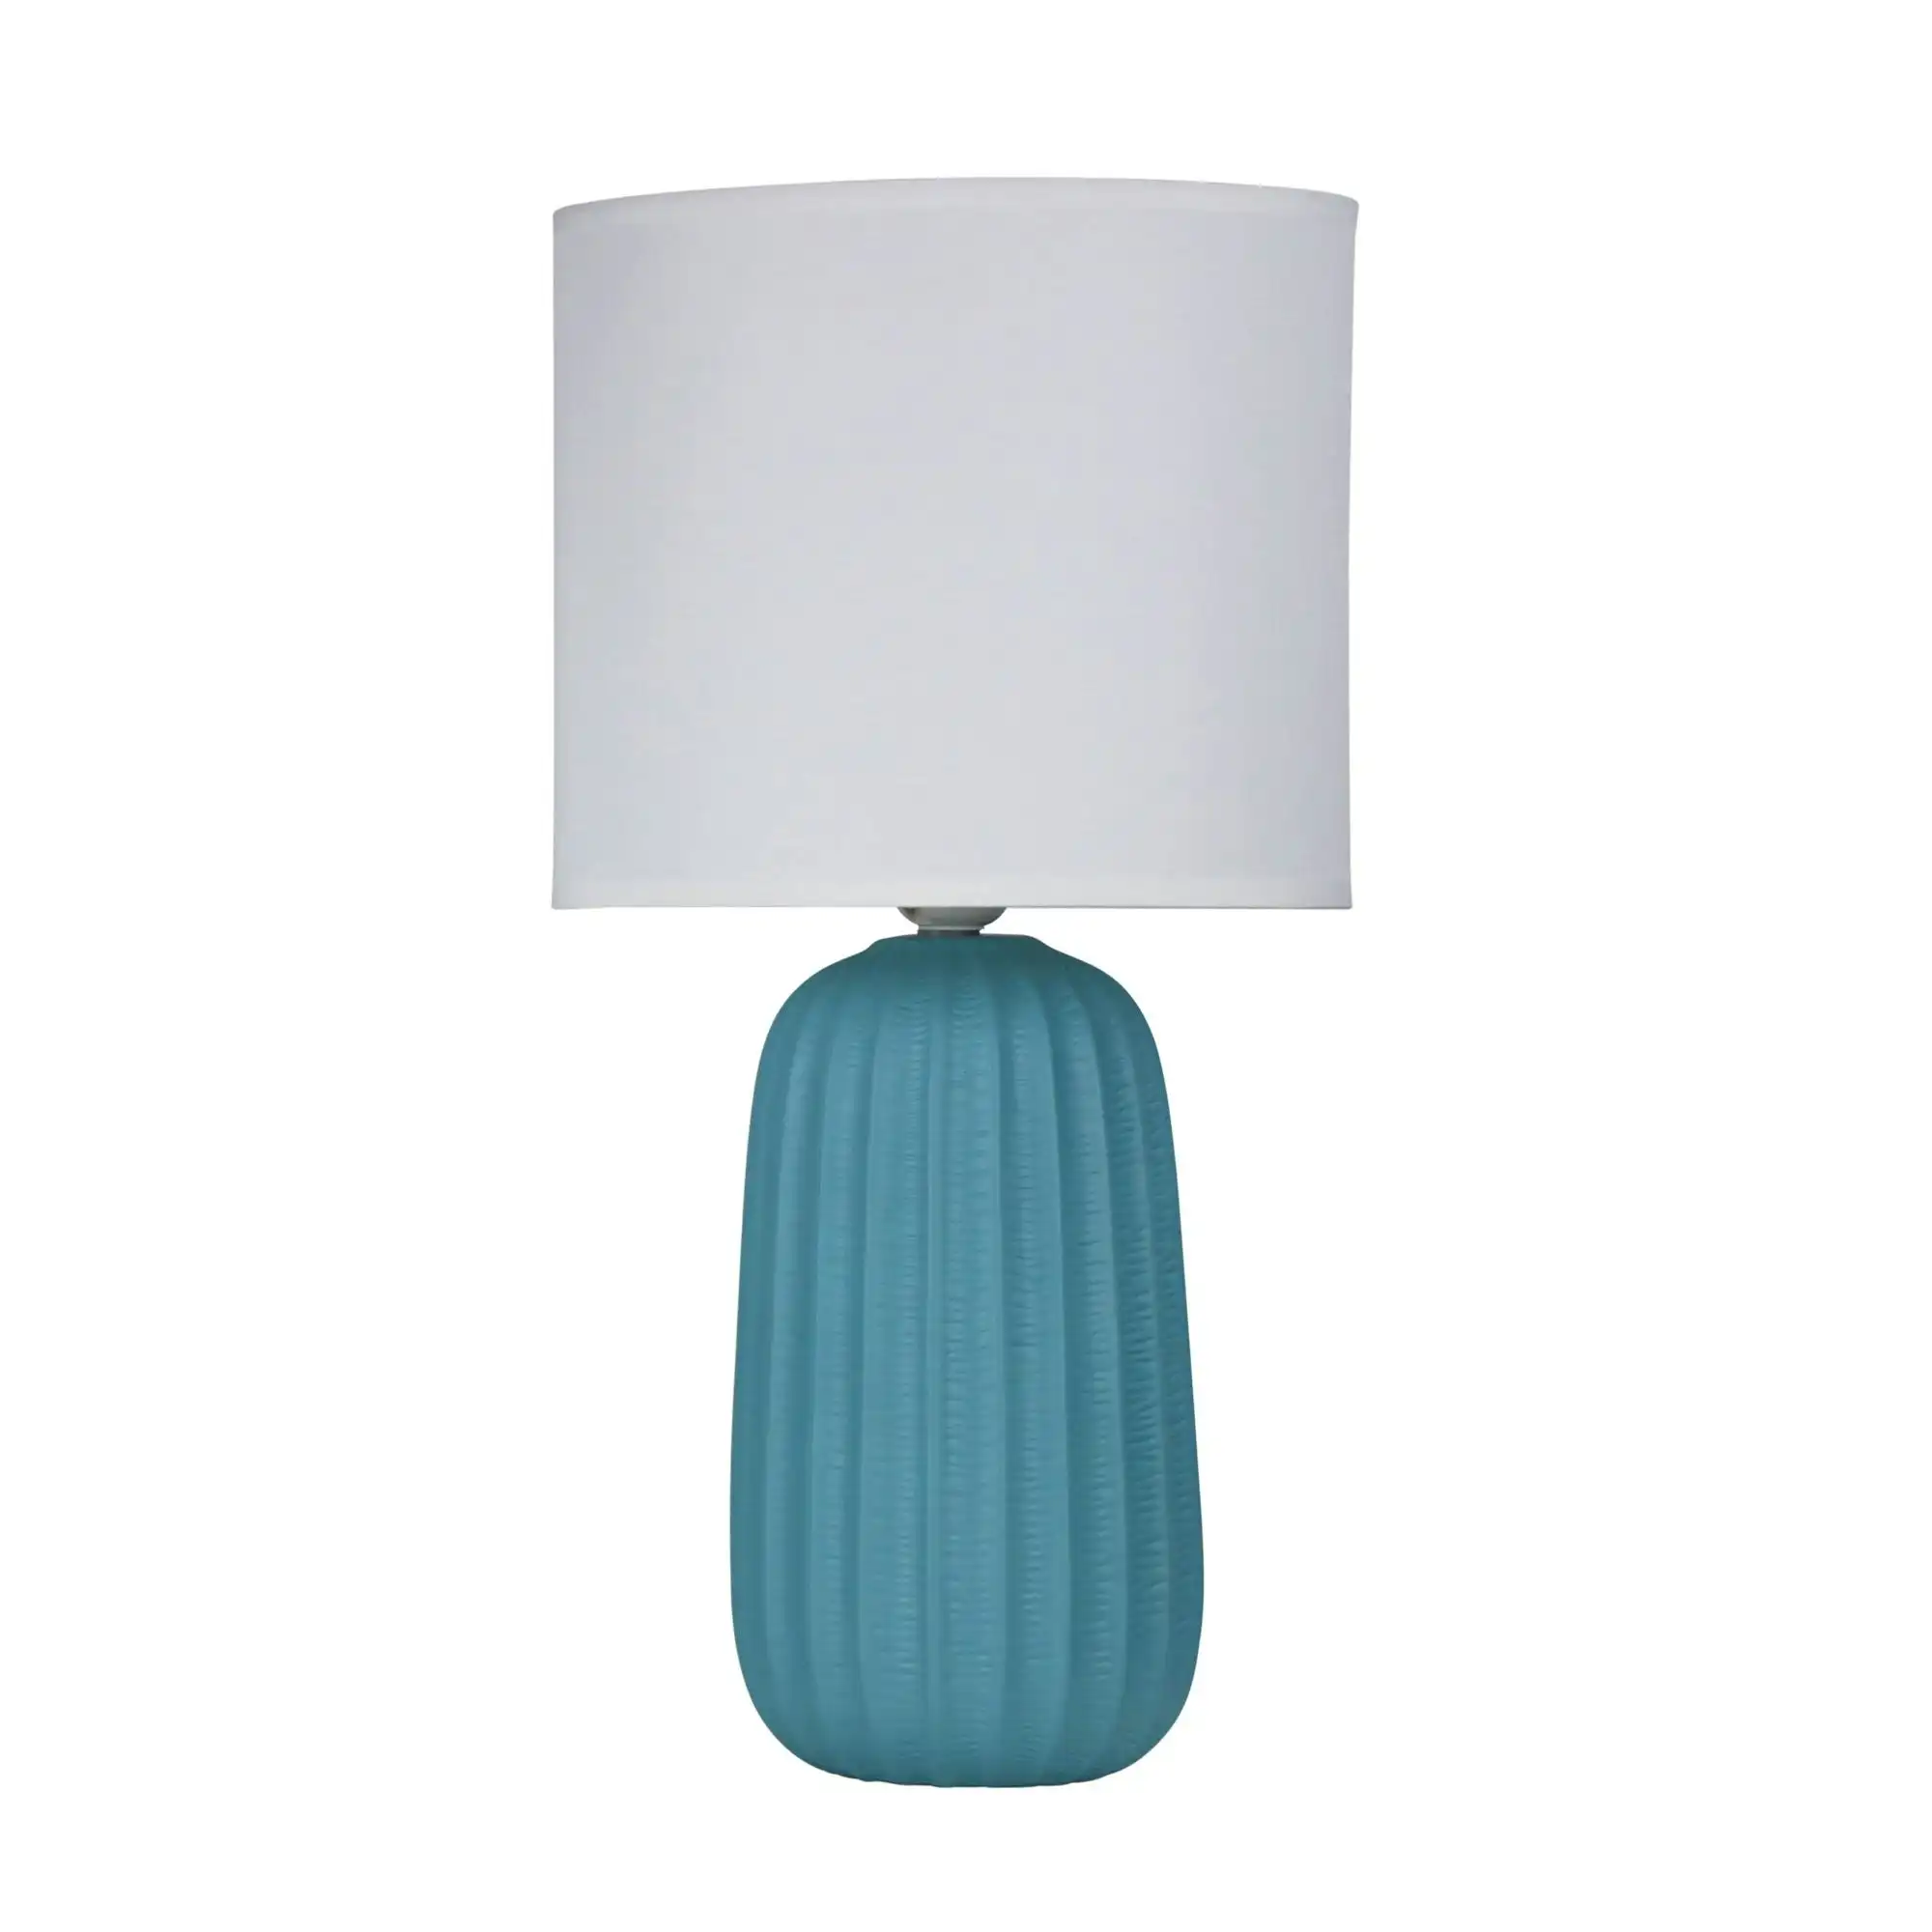 BENJY.25 Blue Ceramic Table Lamp